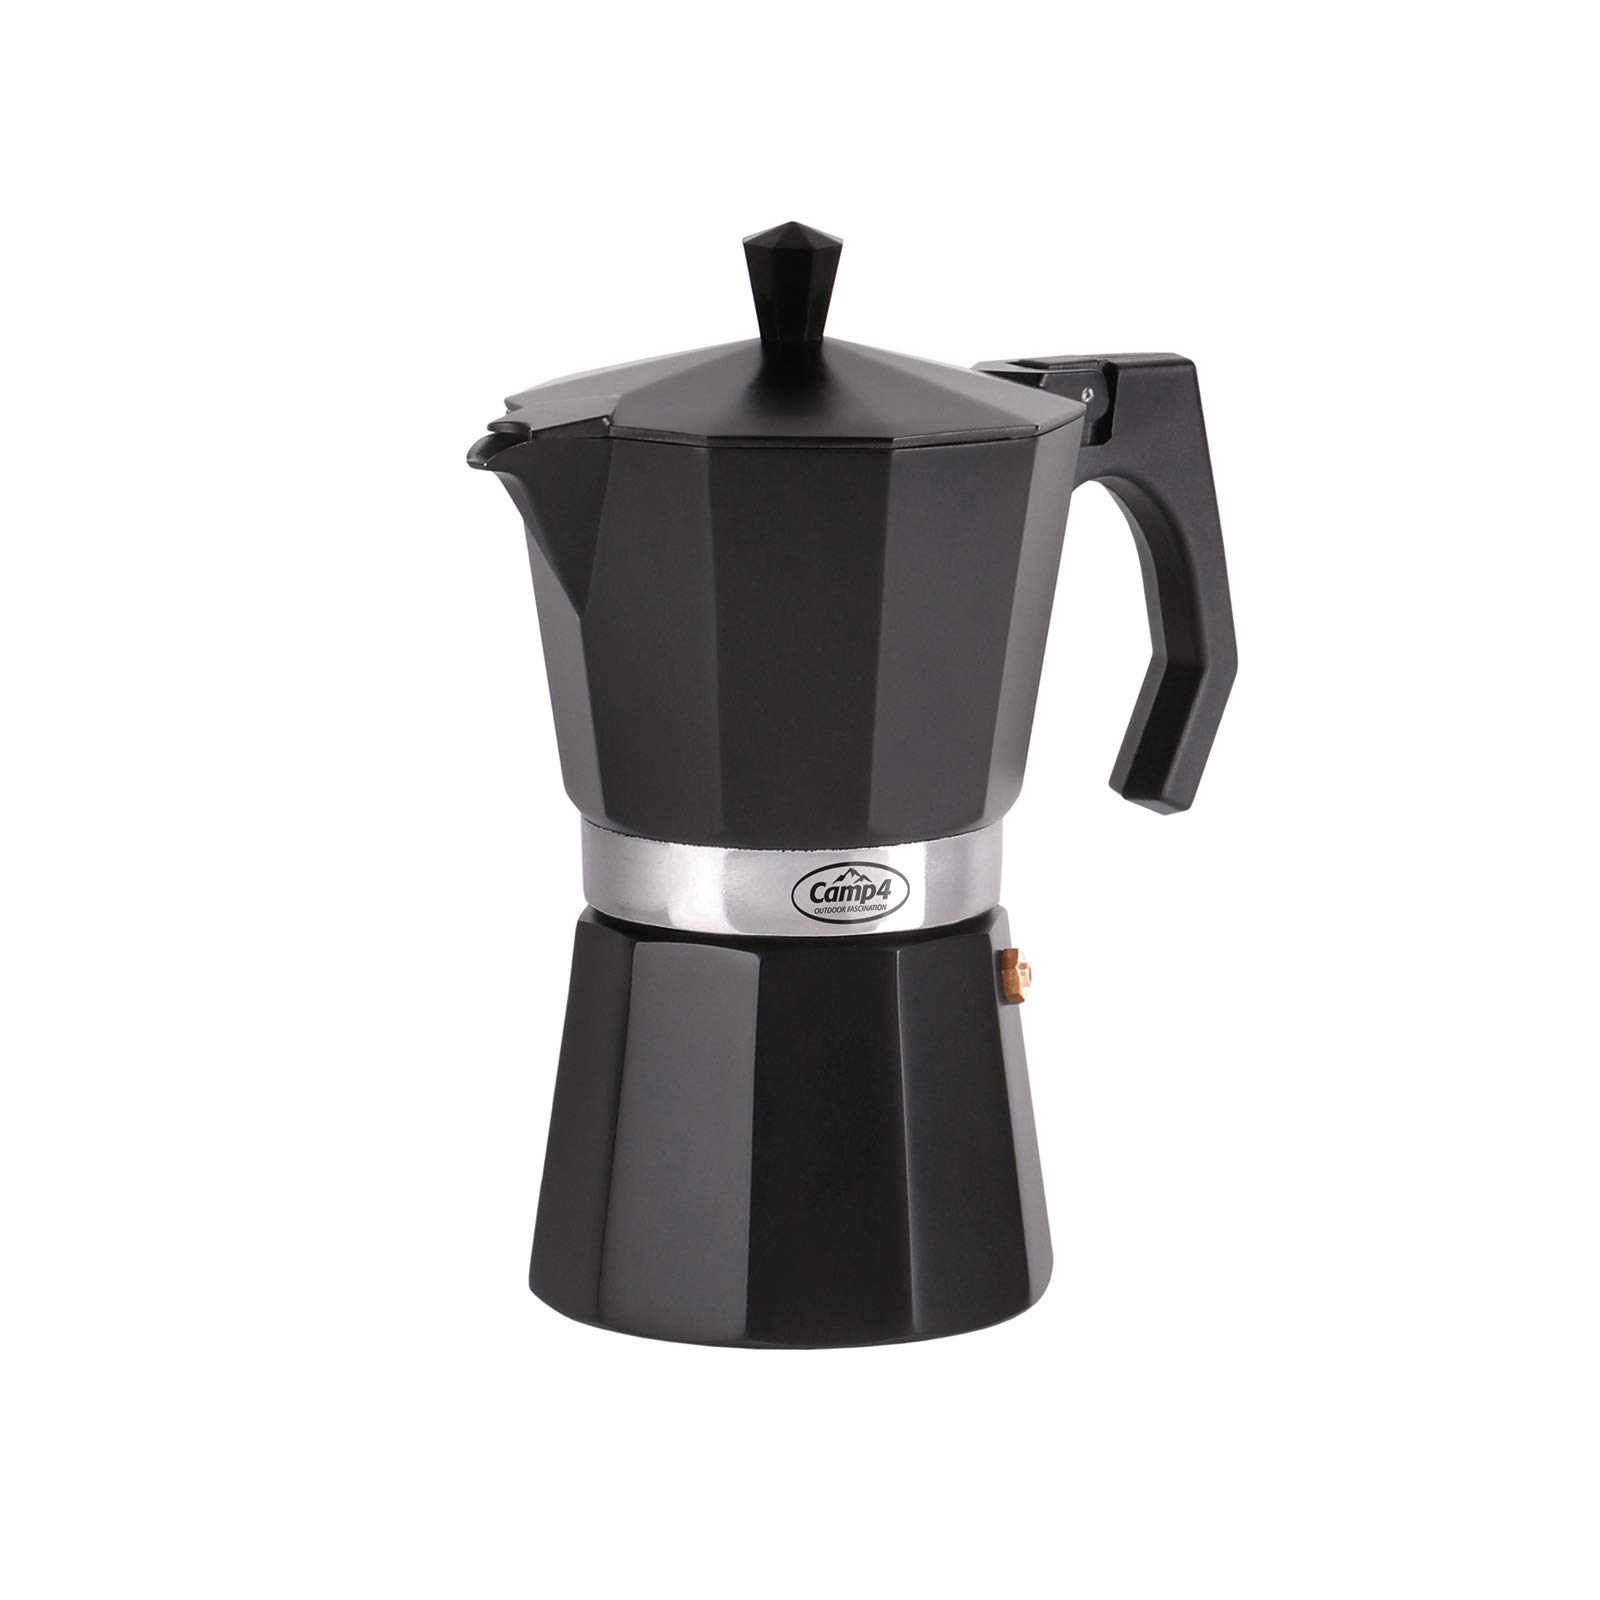 Camping Kaffeebereiter Espressokocher 6 Tassen 350ml Alu schwarz für Gasflamme � von Camp4